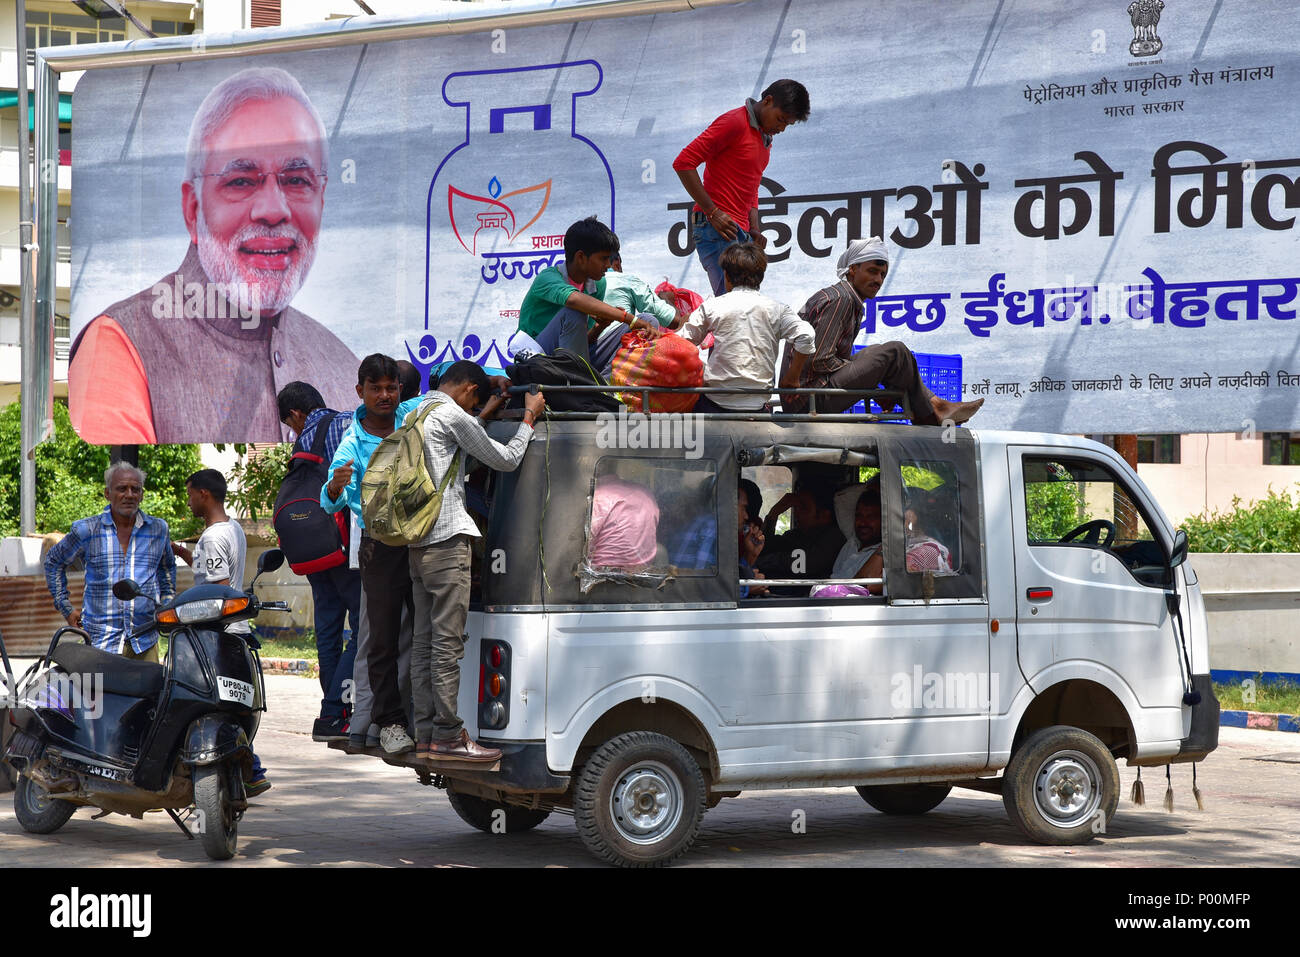 Ein überladenes Auto mit Modi, der Premierminister Indiens, auf die Anzeige im Hintergrund Stockfoto